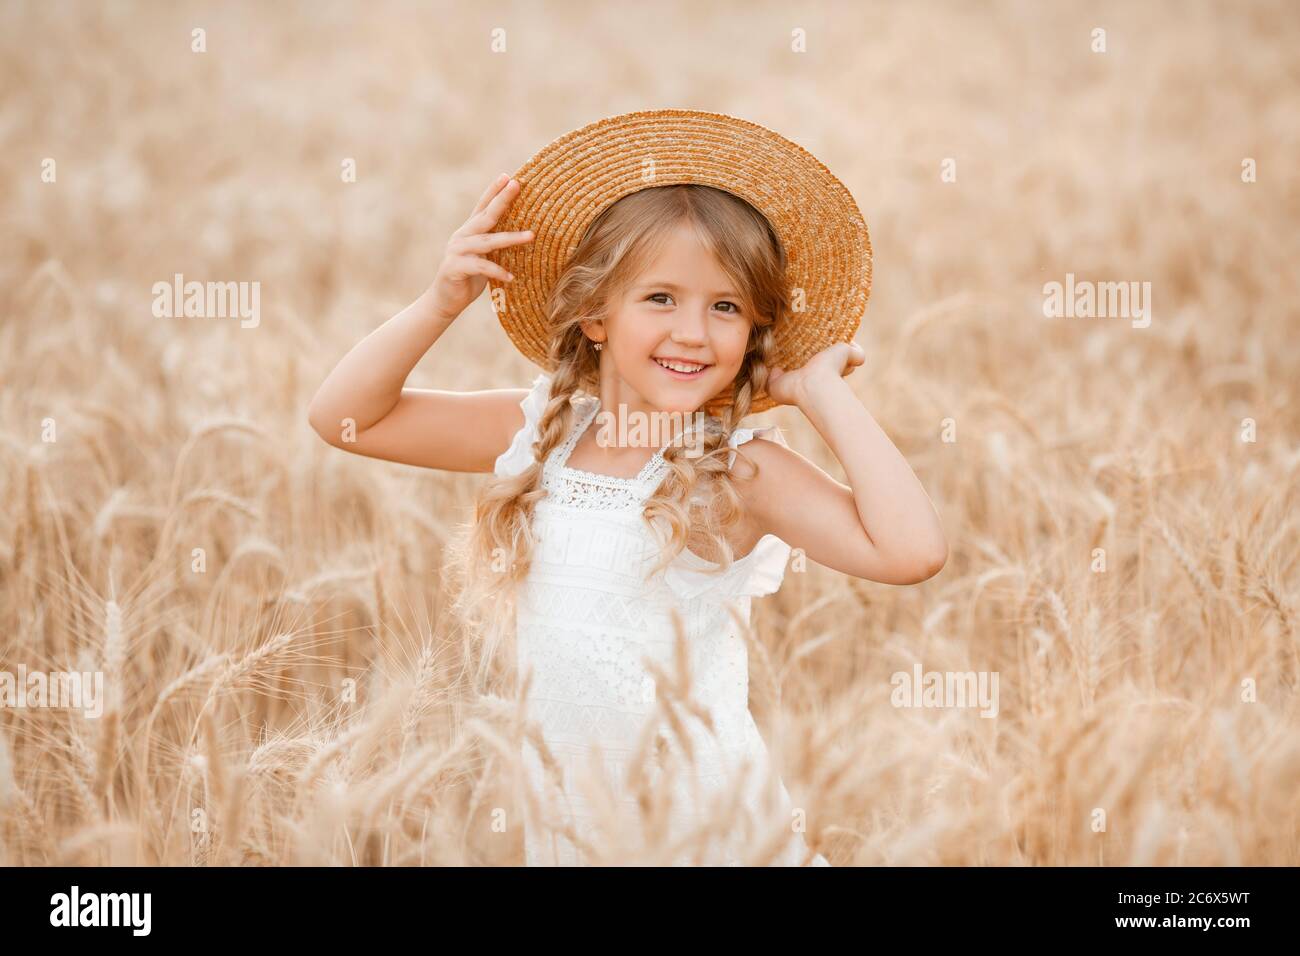 Adorabile bambina gioca su un campo di grano in una calda giornata estiva Foto Stock